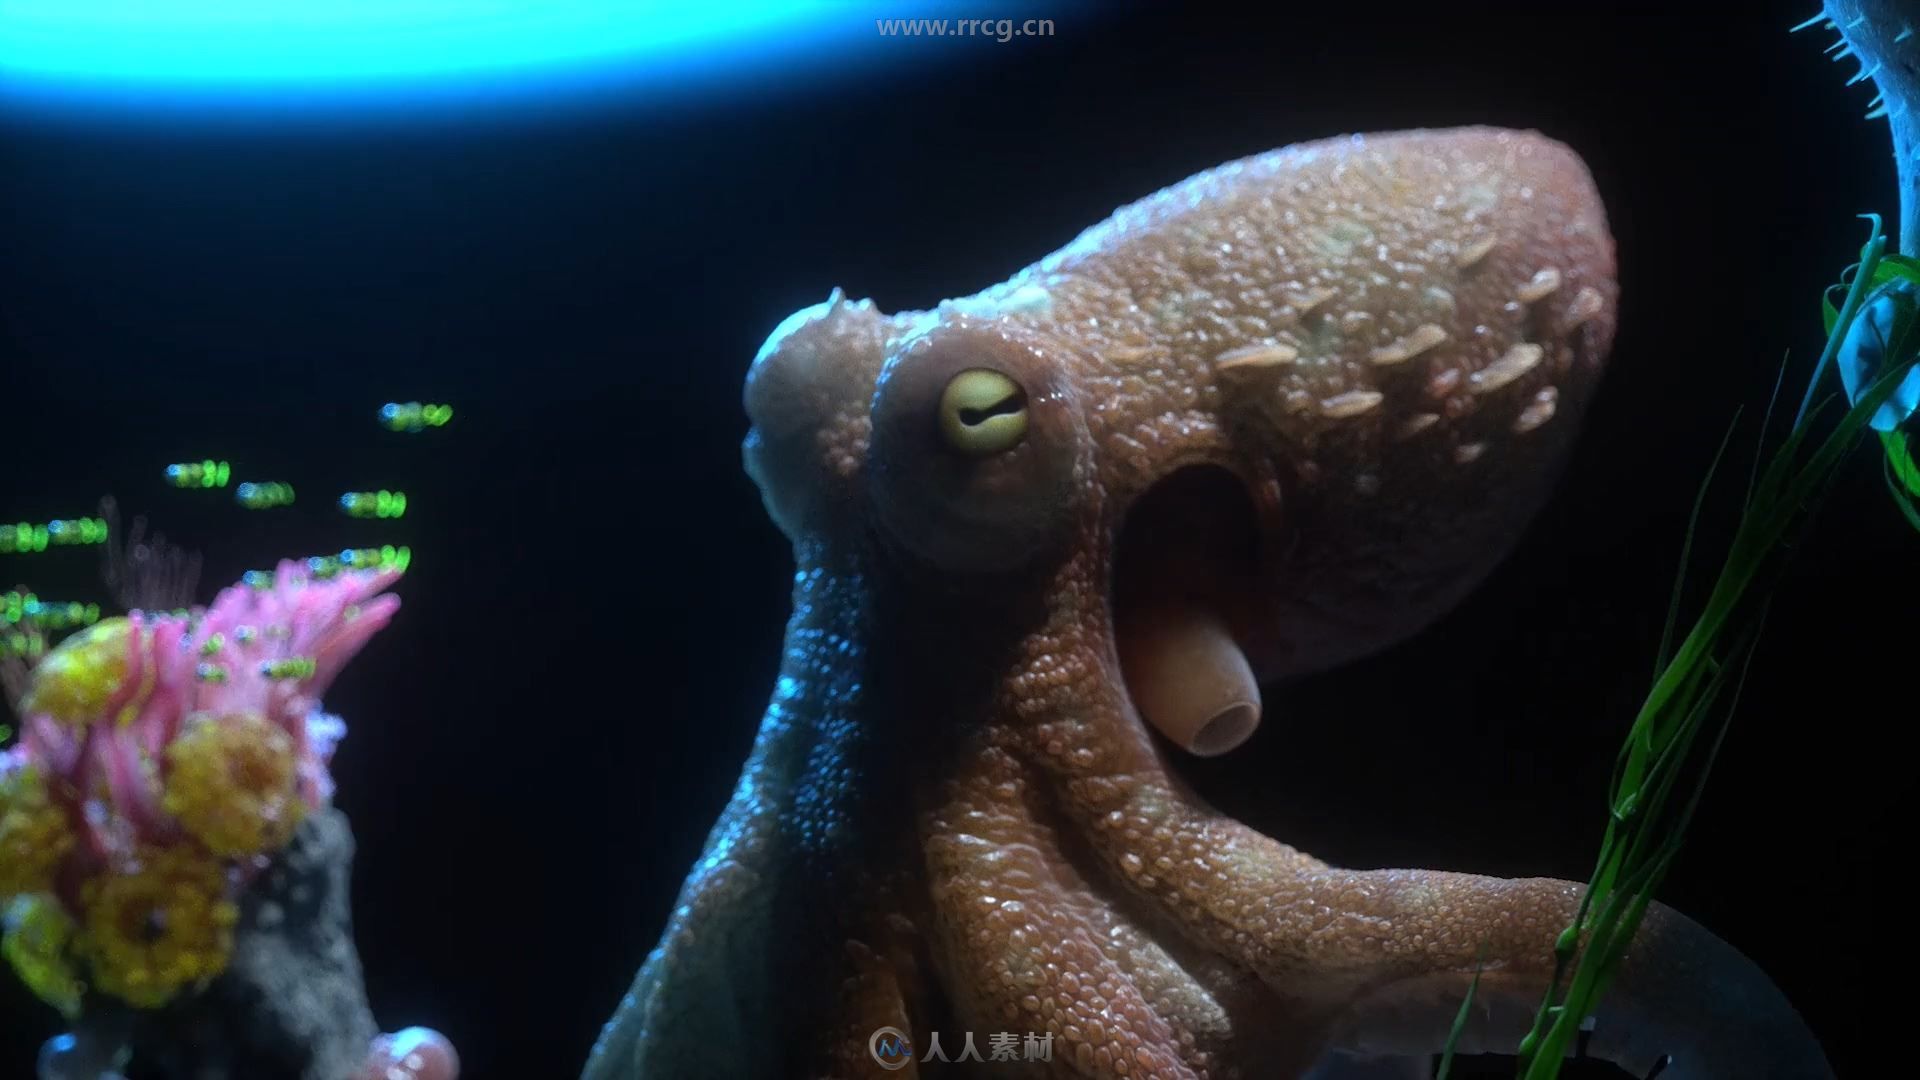 海底八爪章鱼概念设计全流程实例训练视频教程第一季